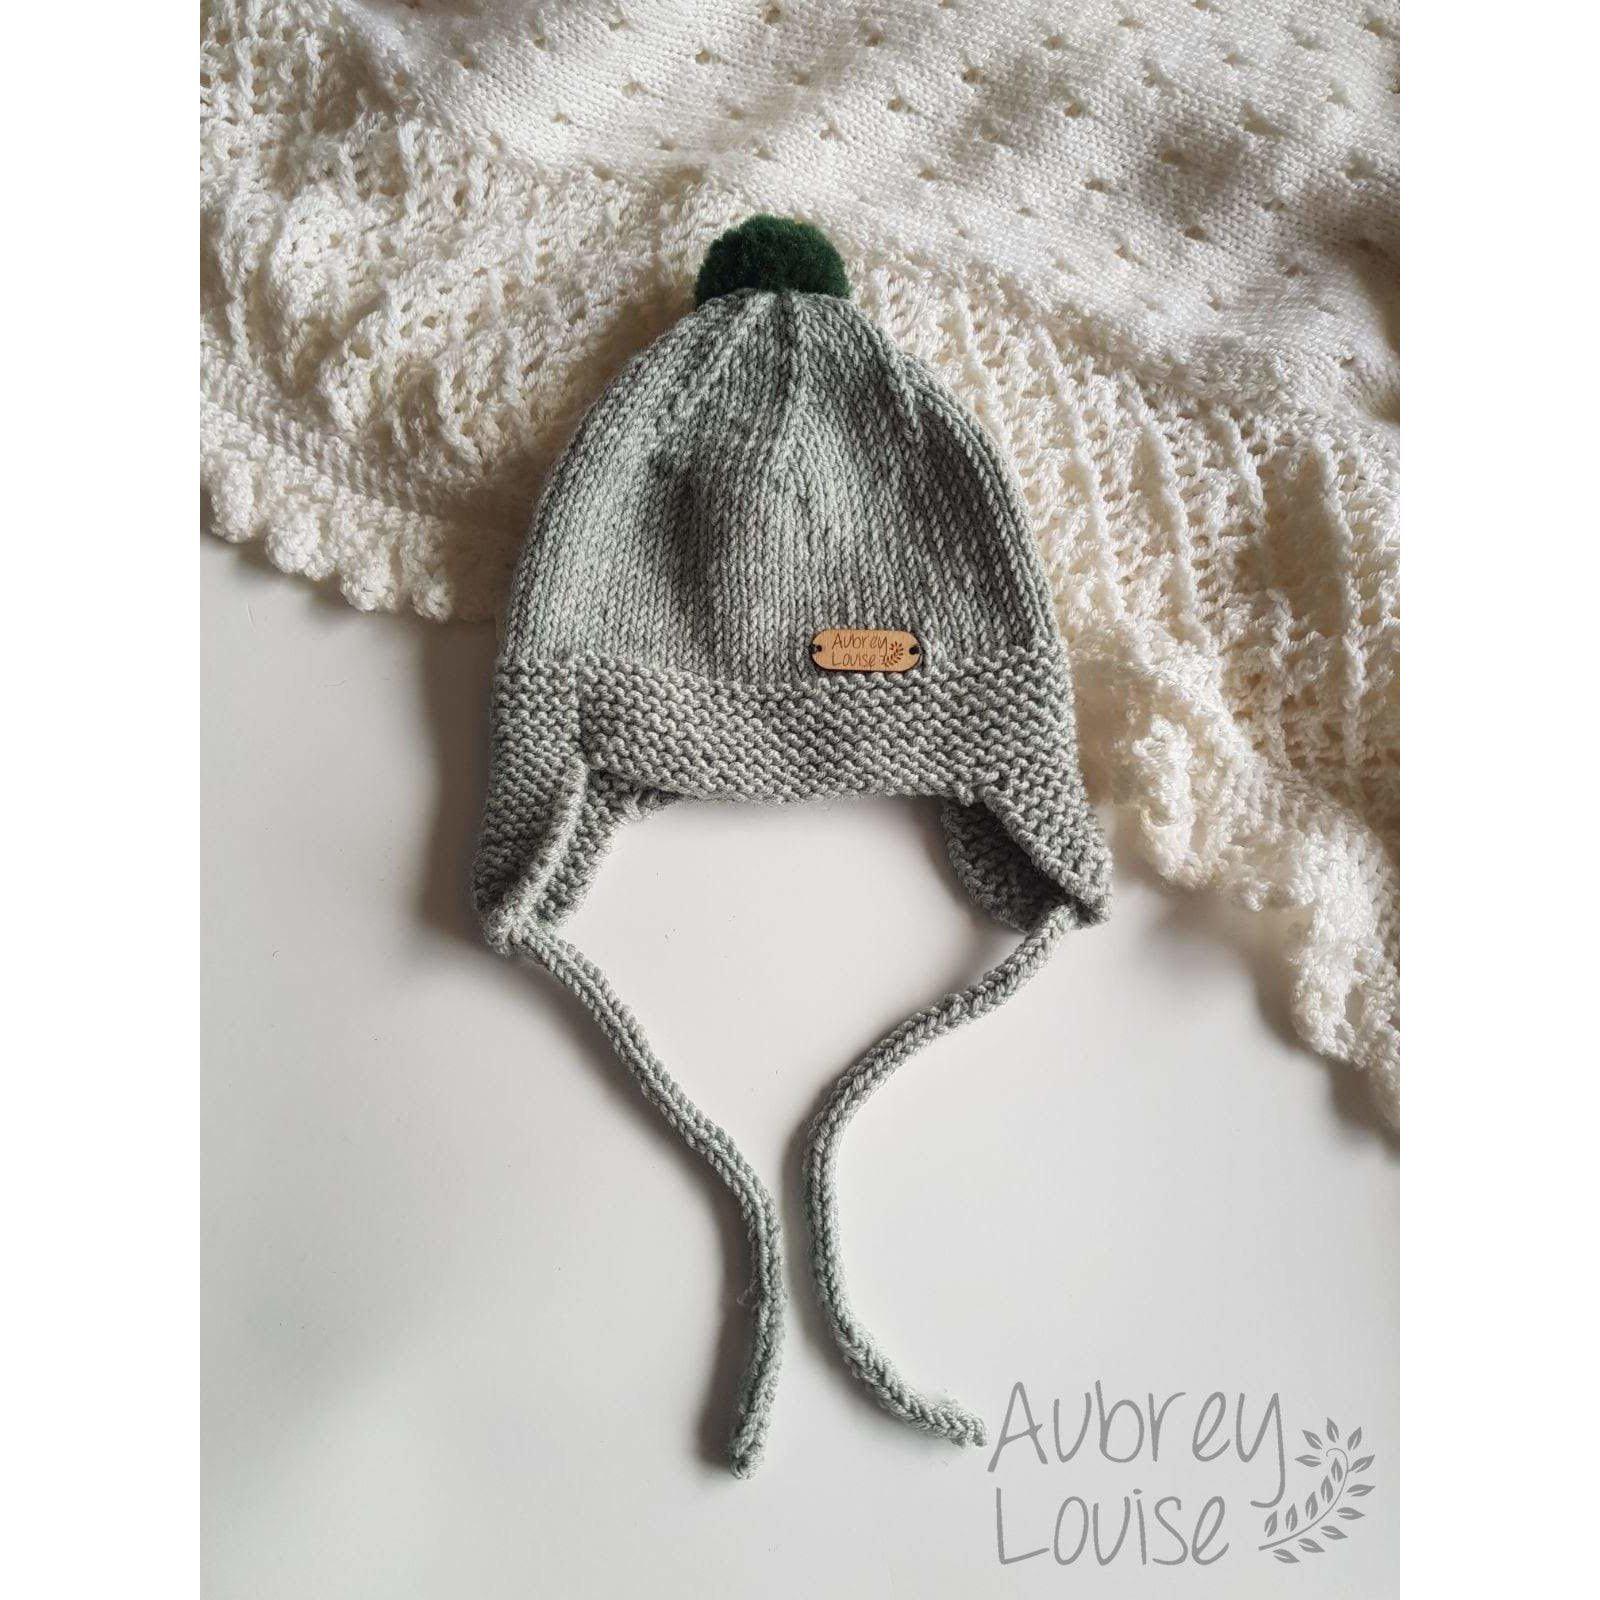 Aubrey Louise Hats/Bonnets 0-3 months Earflap hat